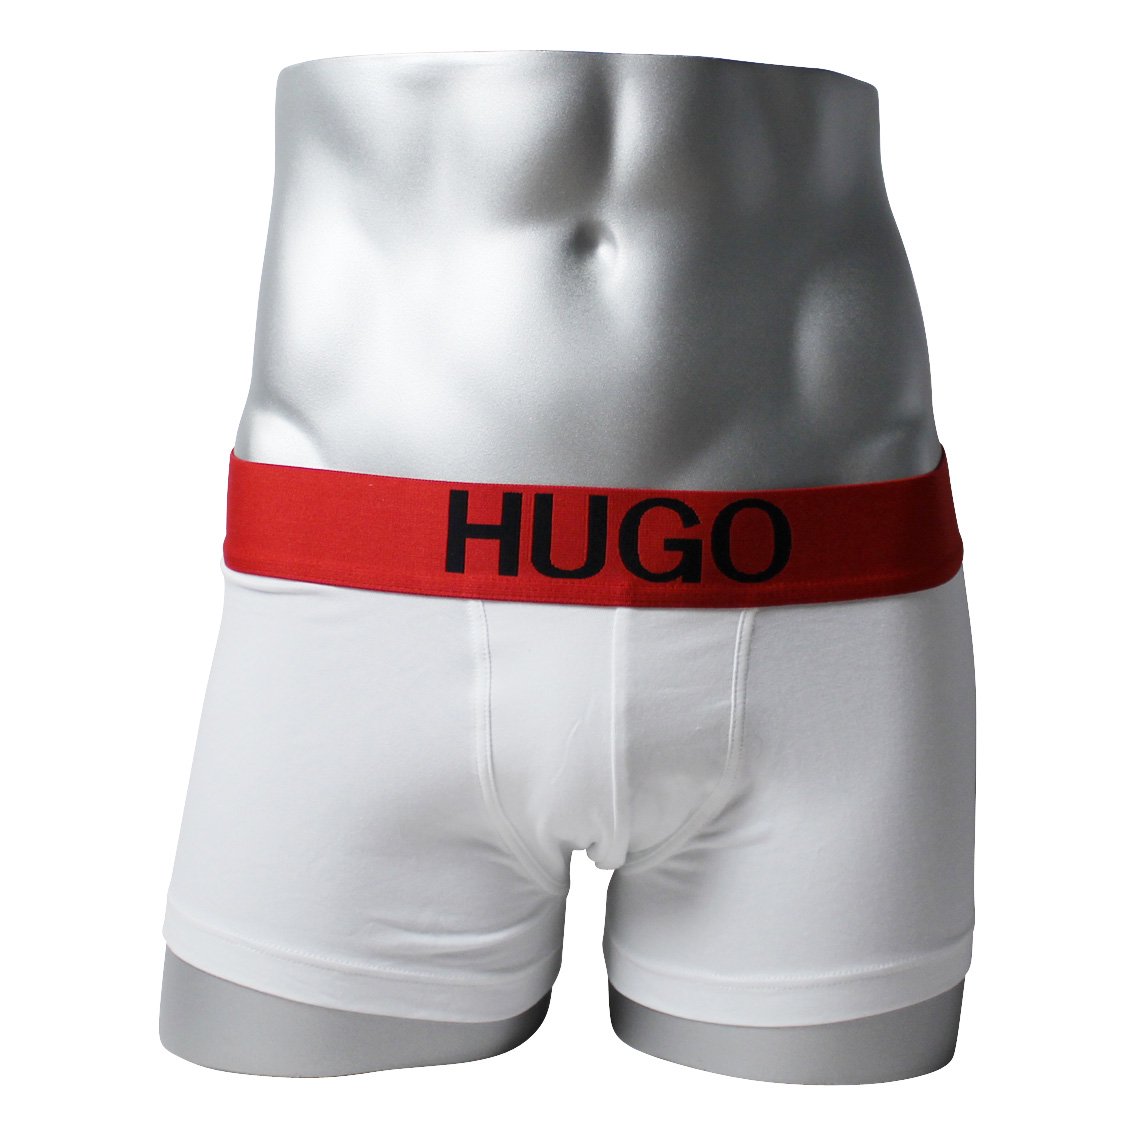 [50428876-100] HUGO BOSS ヒューゴボス ボクサーパンツ メンズ アンダーウェア インナー 男性 下着 ブランド おすすめ 人気 プレゼント